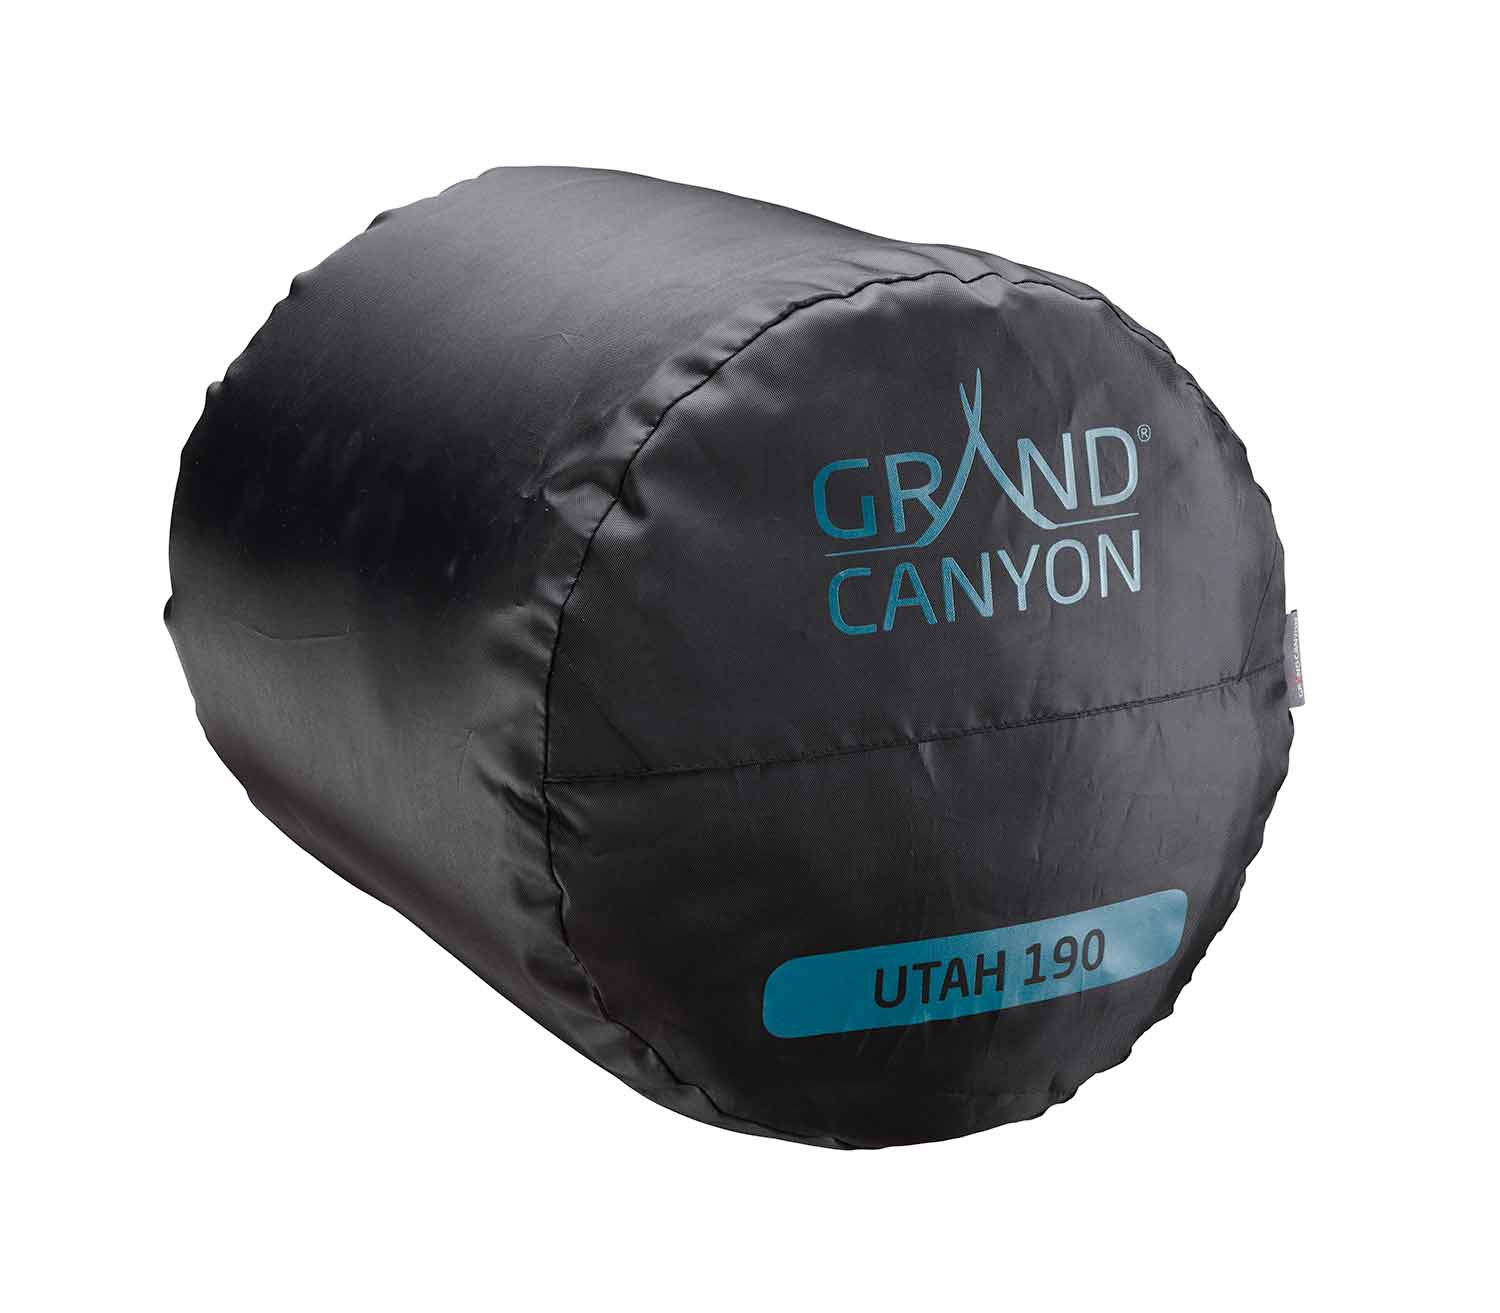 Saco de Dormir Grand Canyon Utah 190 bolsa